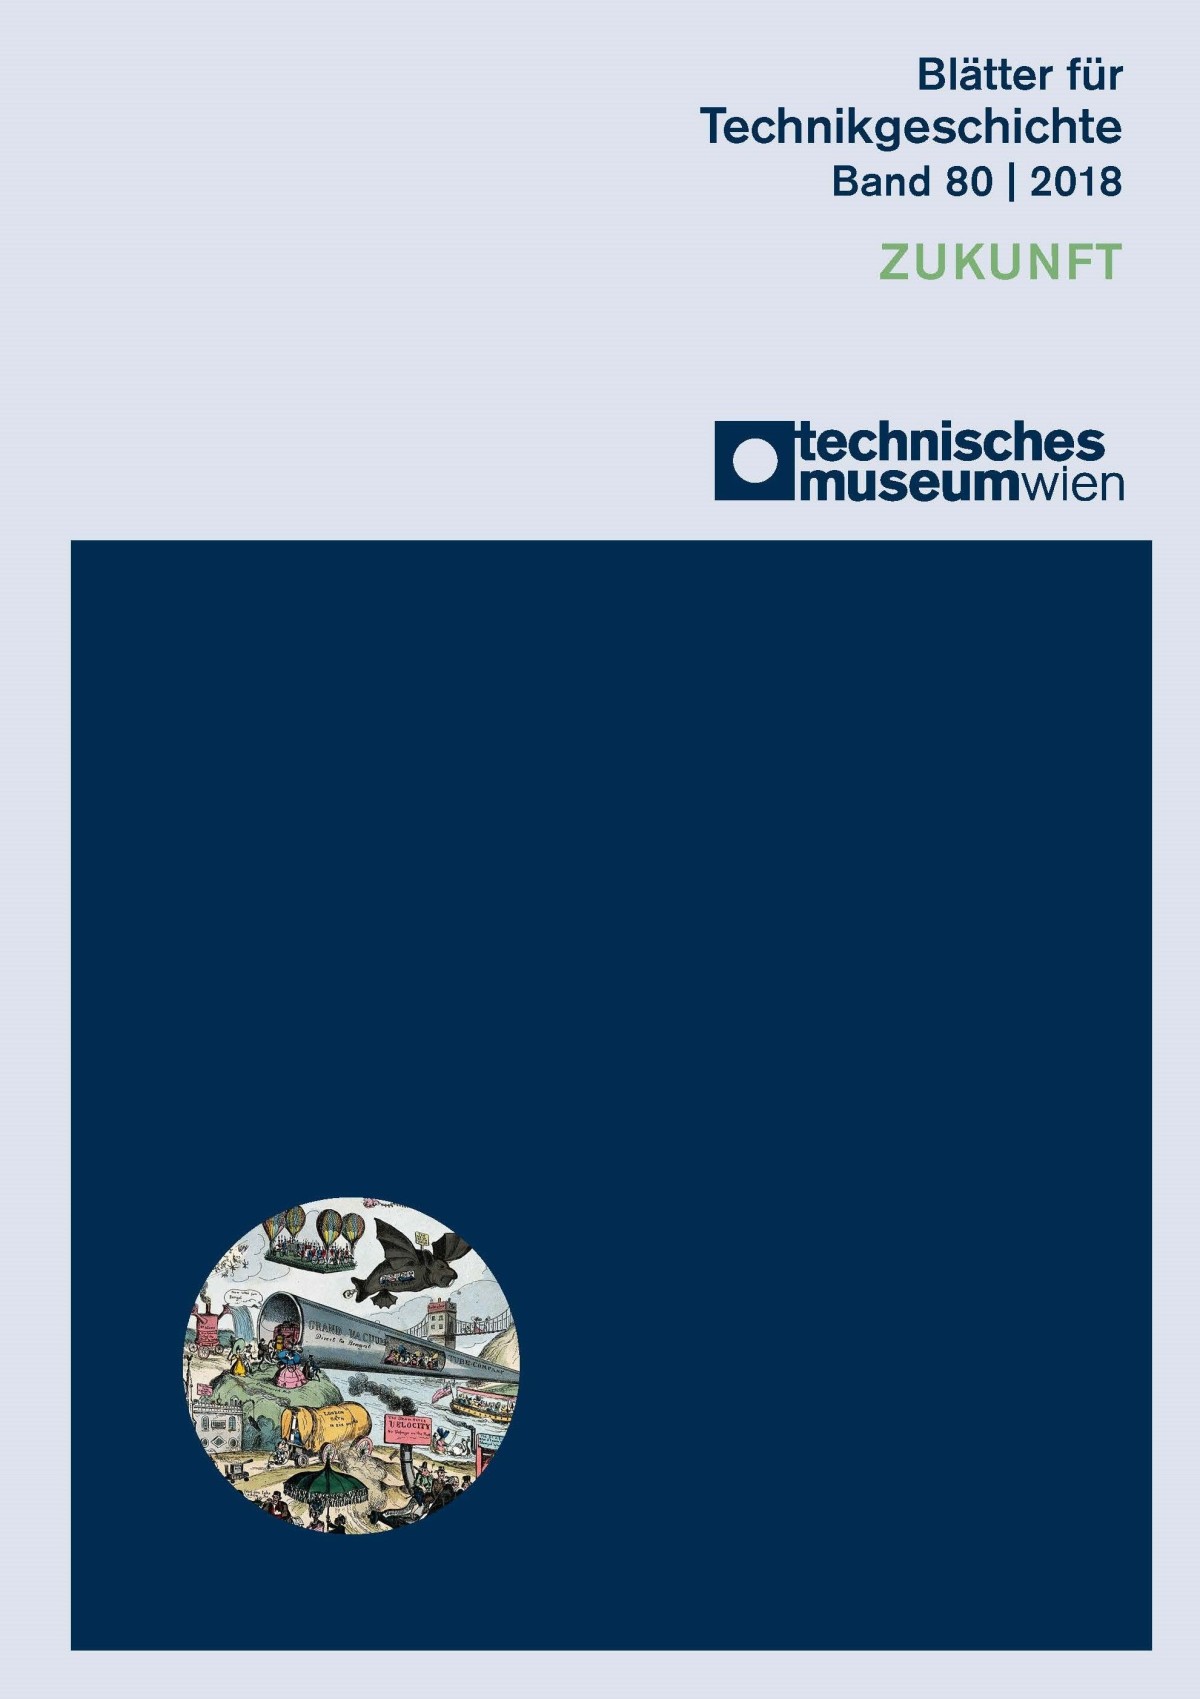 Cover der "Blätter für Technikgeschichte", Band 80 (ZUKUNFT)